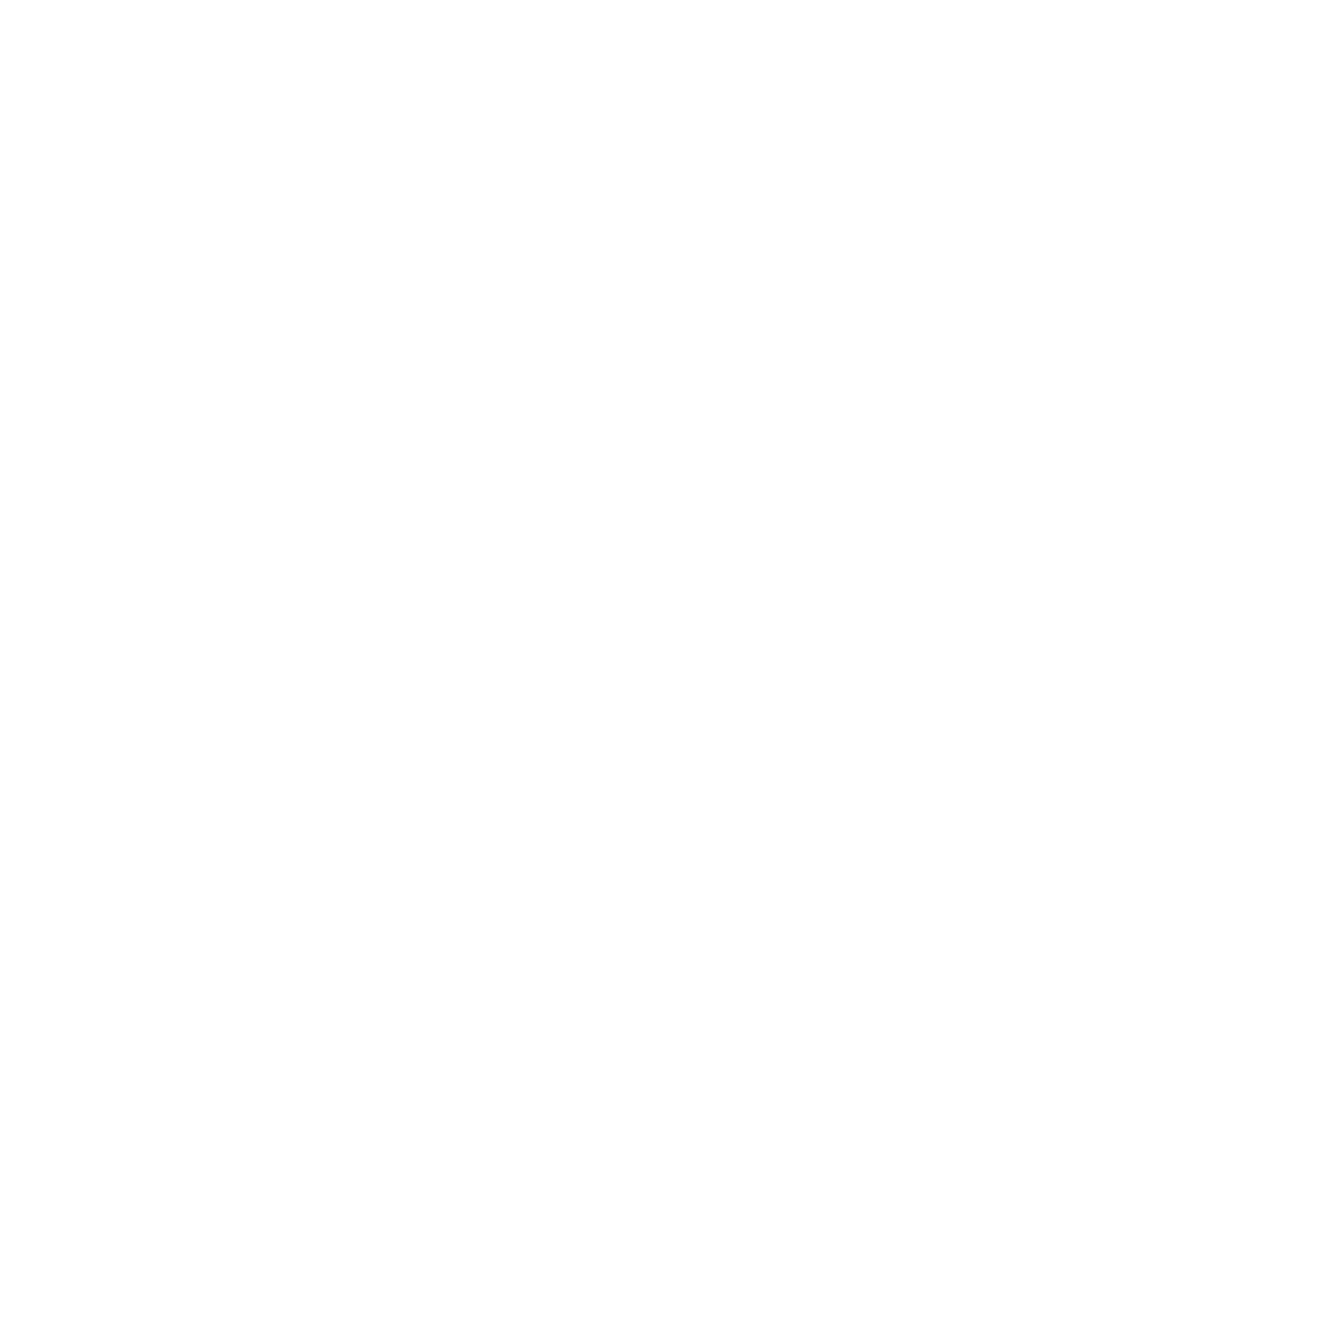 OLIVRIO EXPRESS SELIVERY LOGO_Plan de travail 1_Plan de travail 1